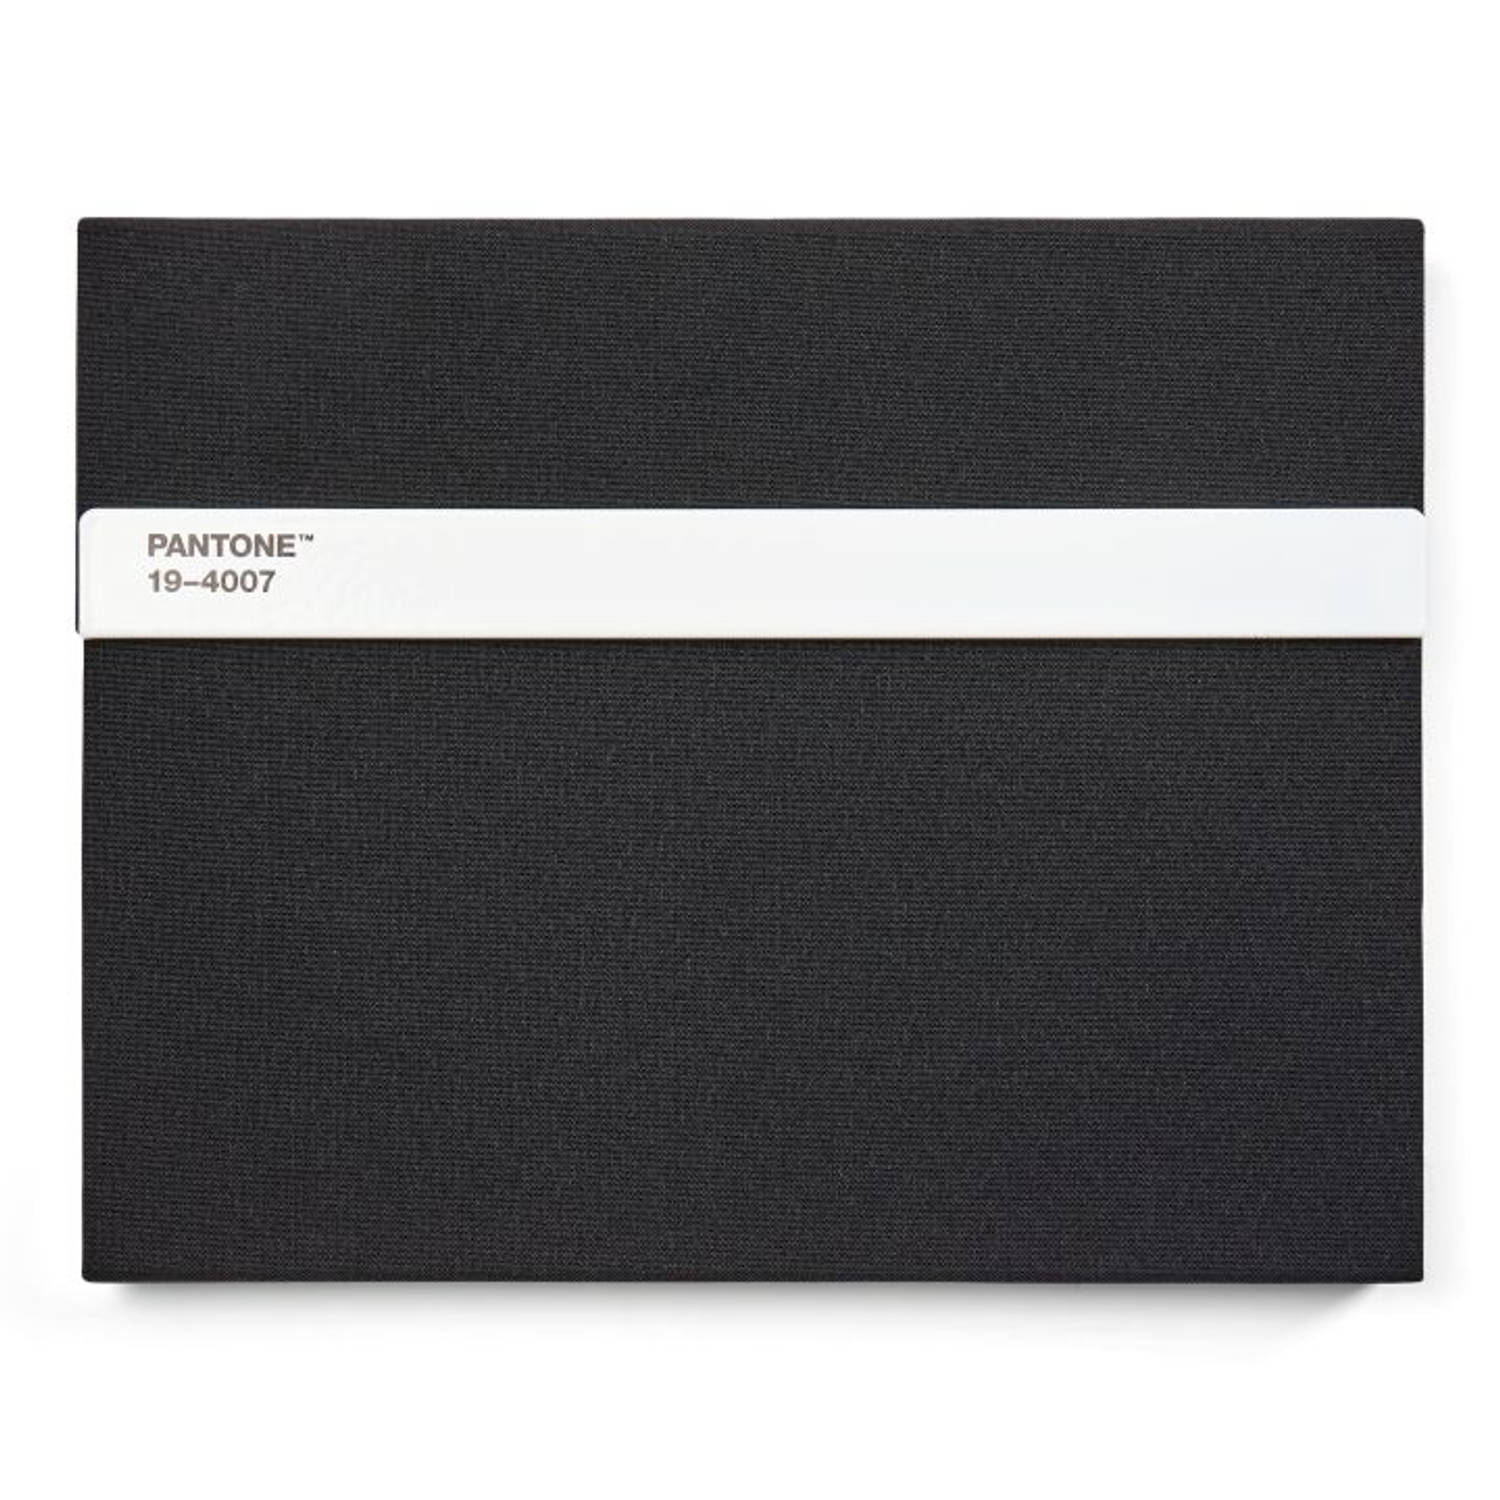 Copenhagen Design - Notebook Lined with Pen